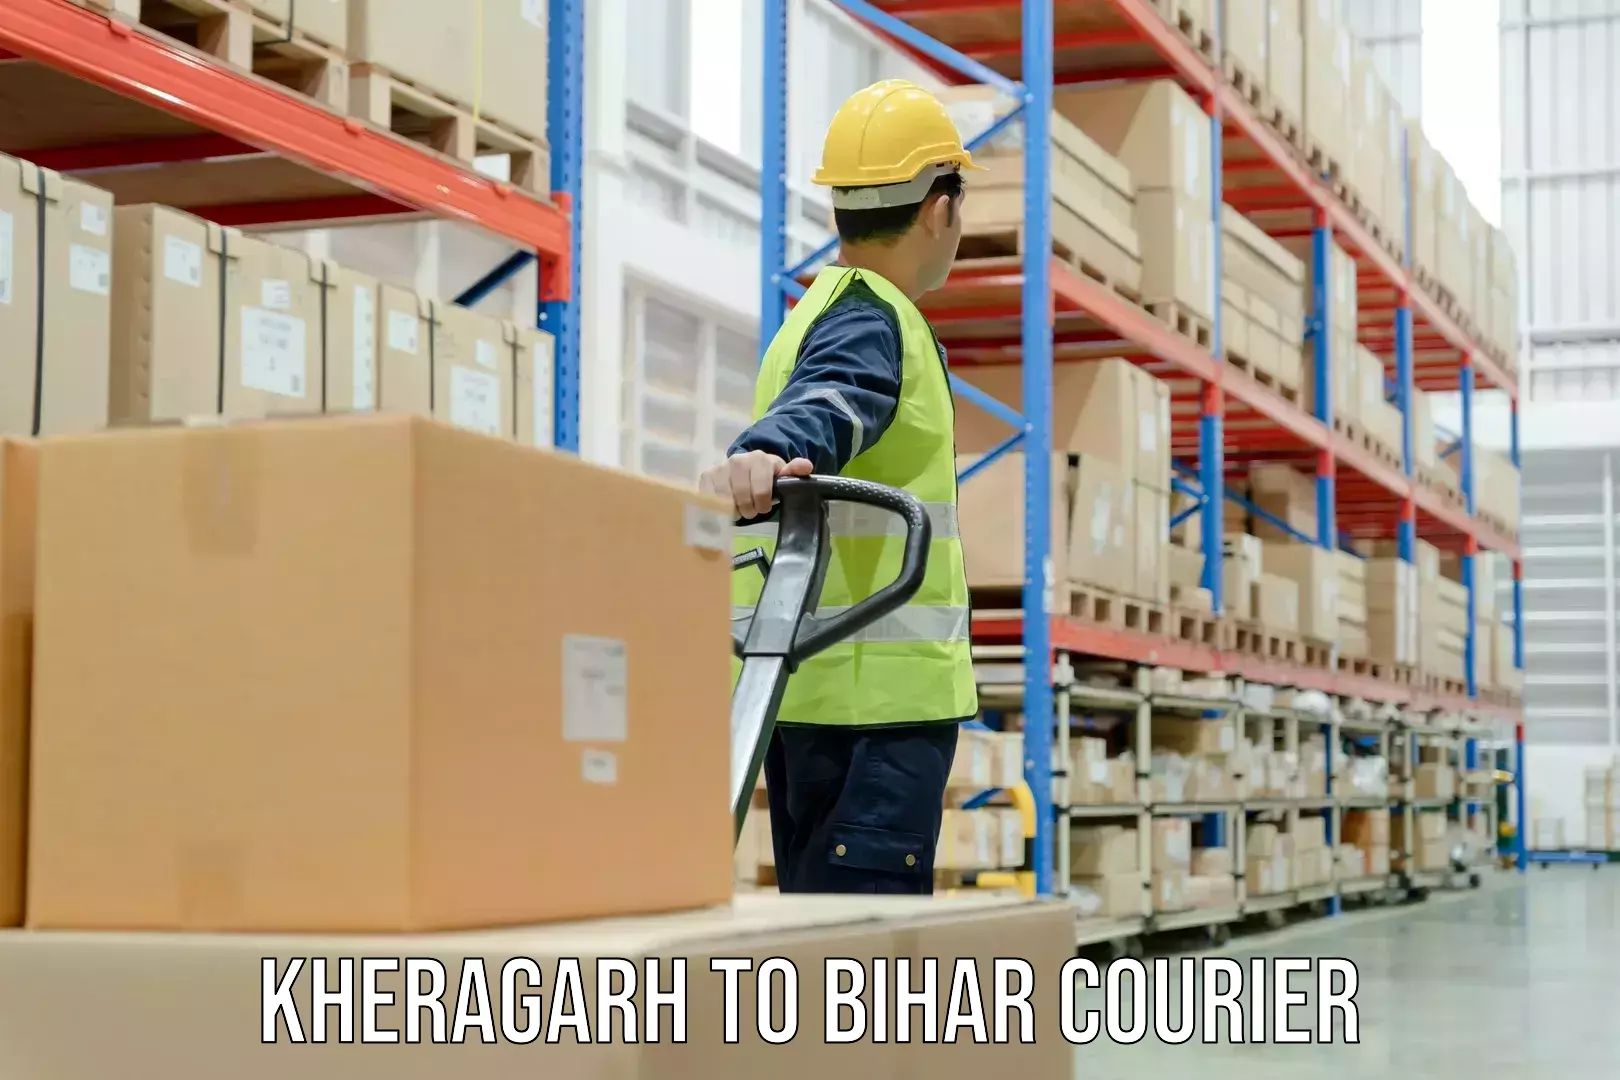 Comprehensive freight services Kheragarh to Bihar